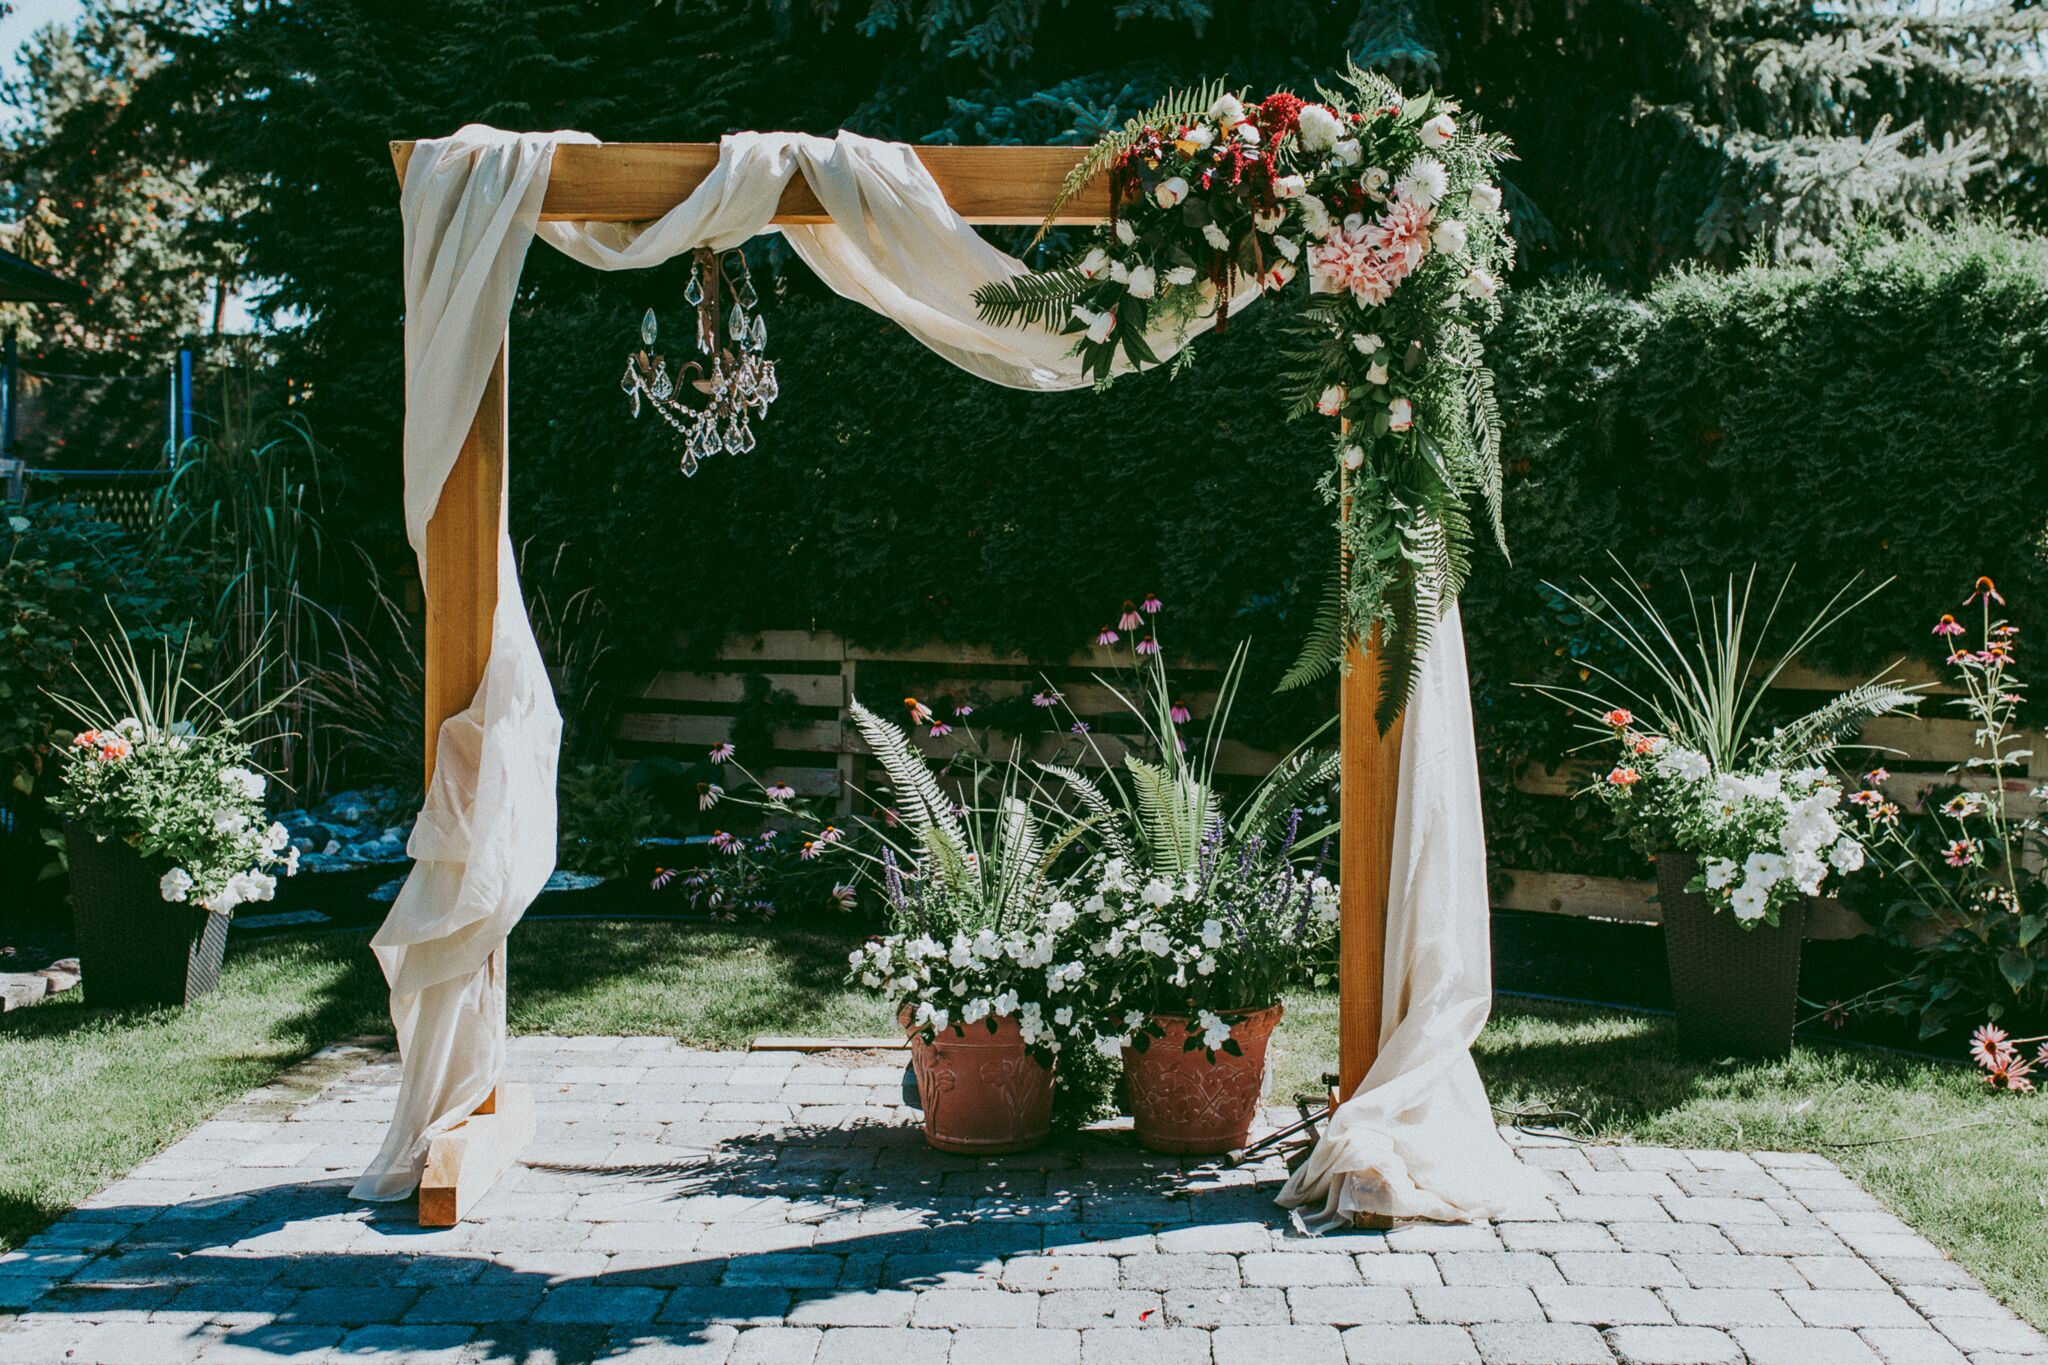 DIY Arch For Wedding
 DIY Wooden Wedding Arch With Flower Garland